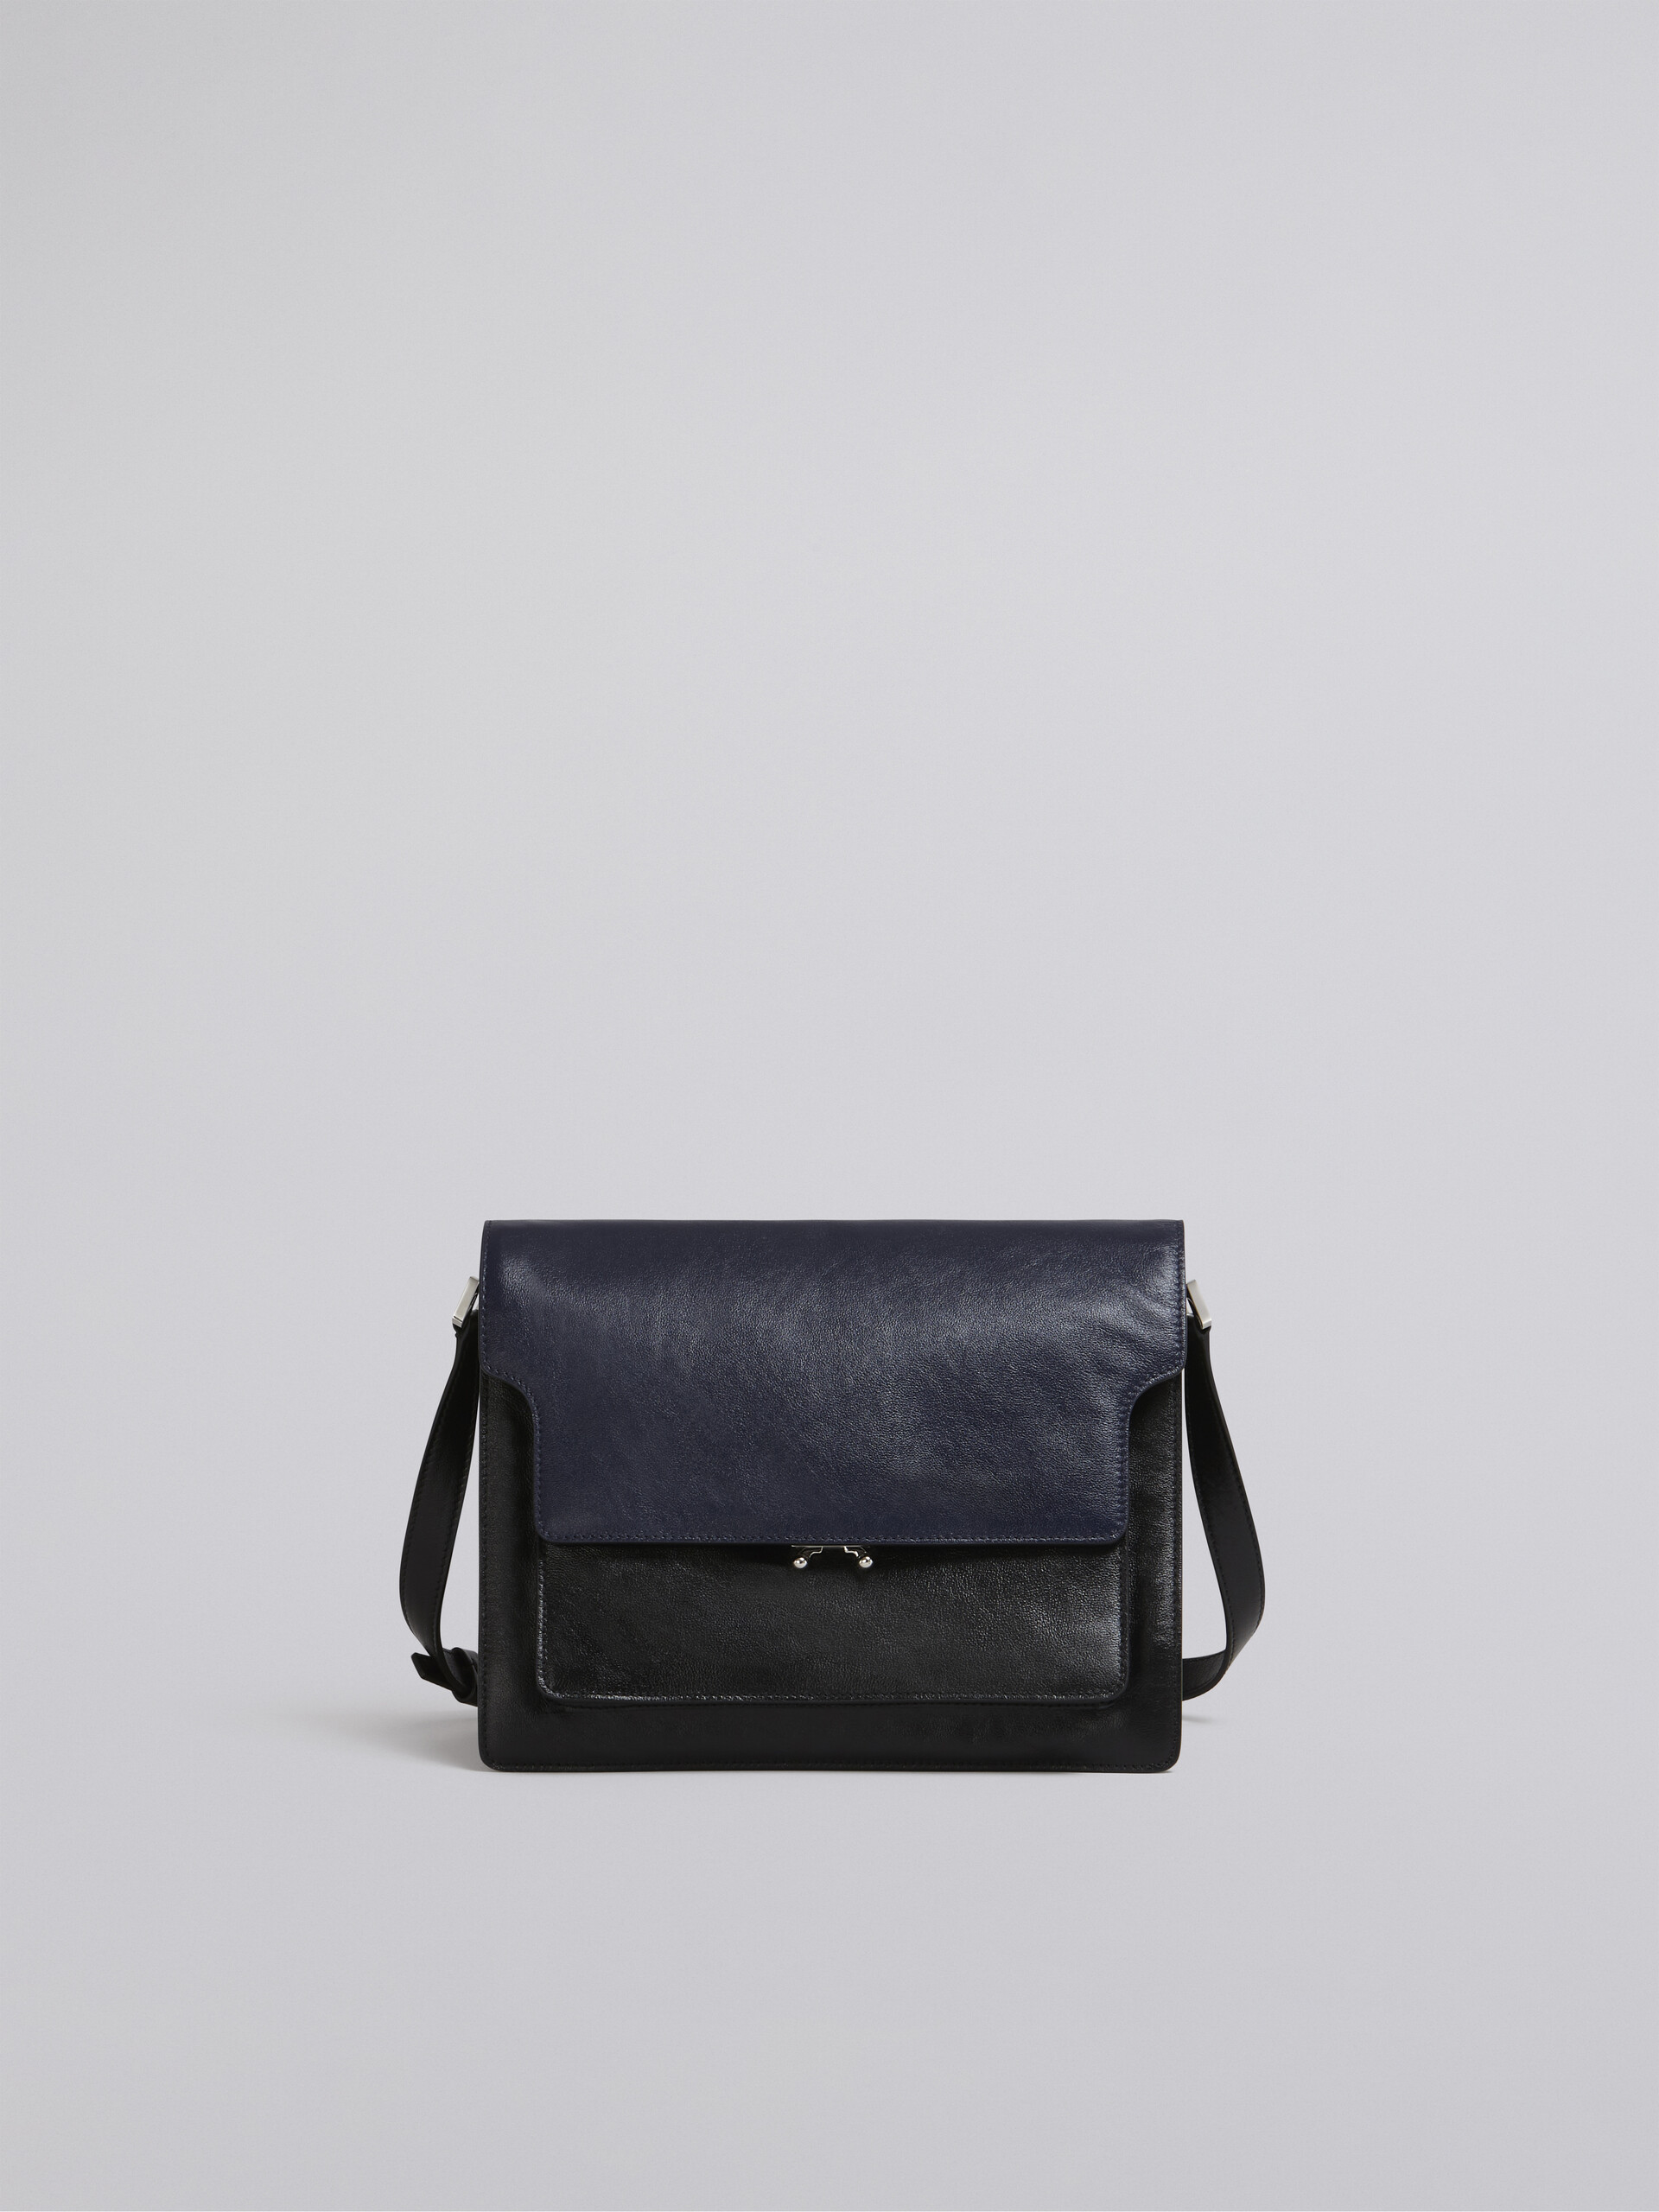 TRUNK SOFT large bag in blue and black leather - Shoulder Bag - Image 1